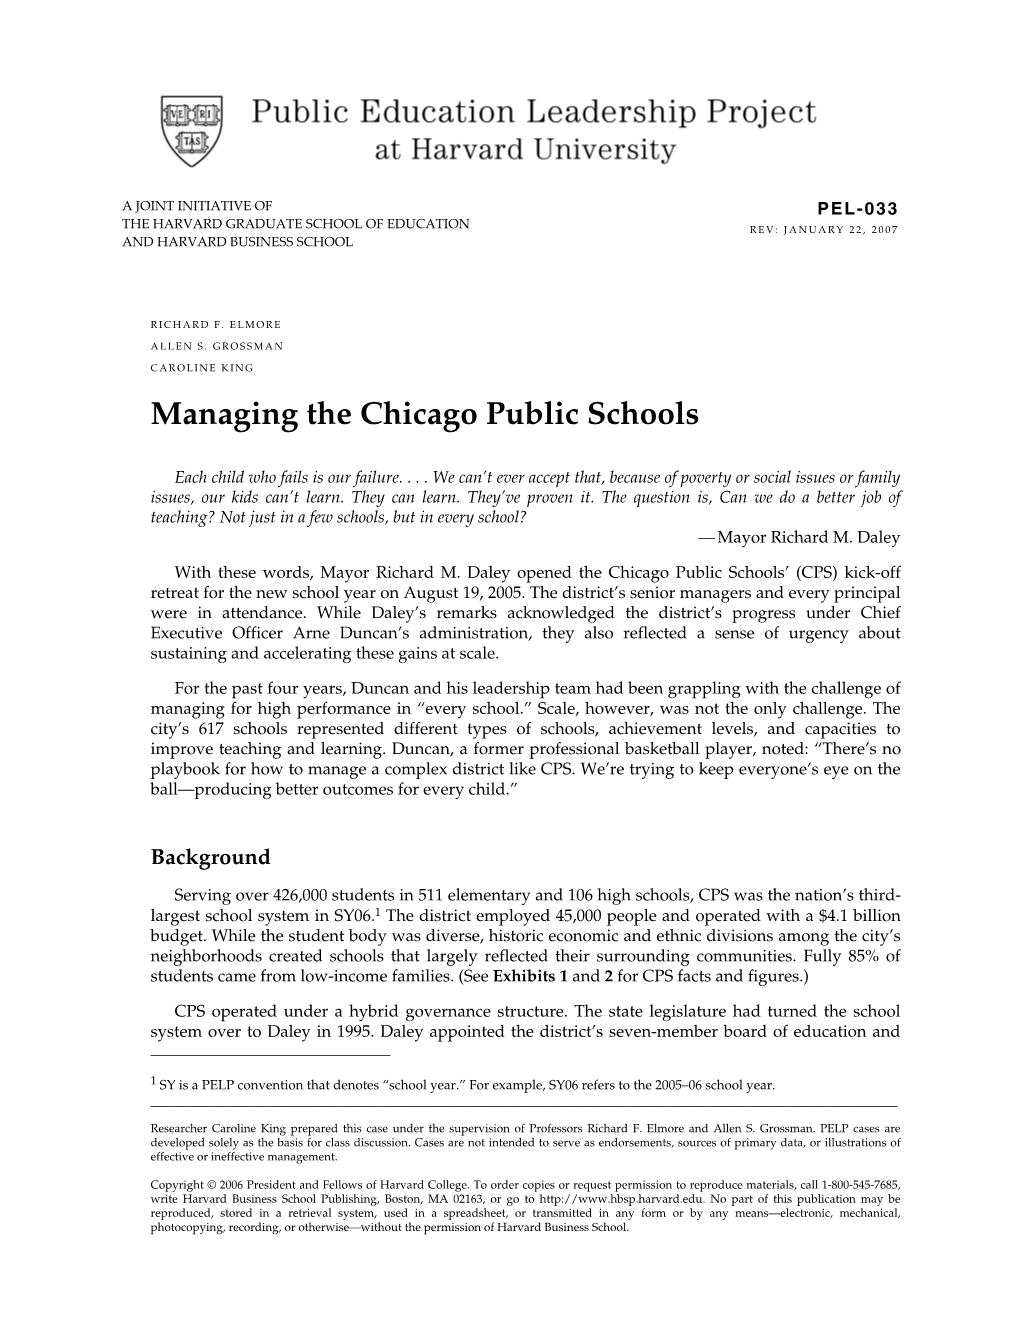 Managing the Chicago Public Schools